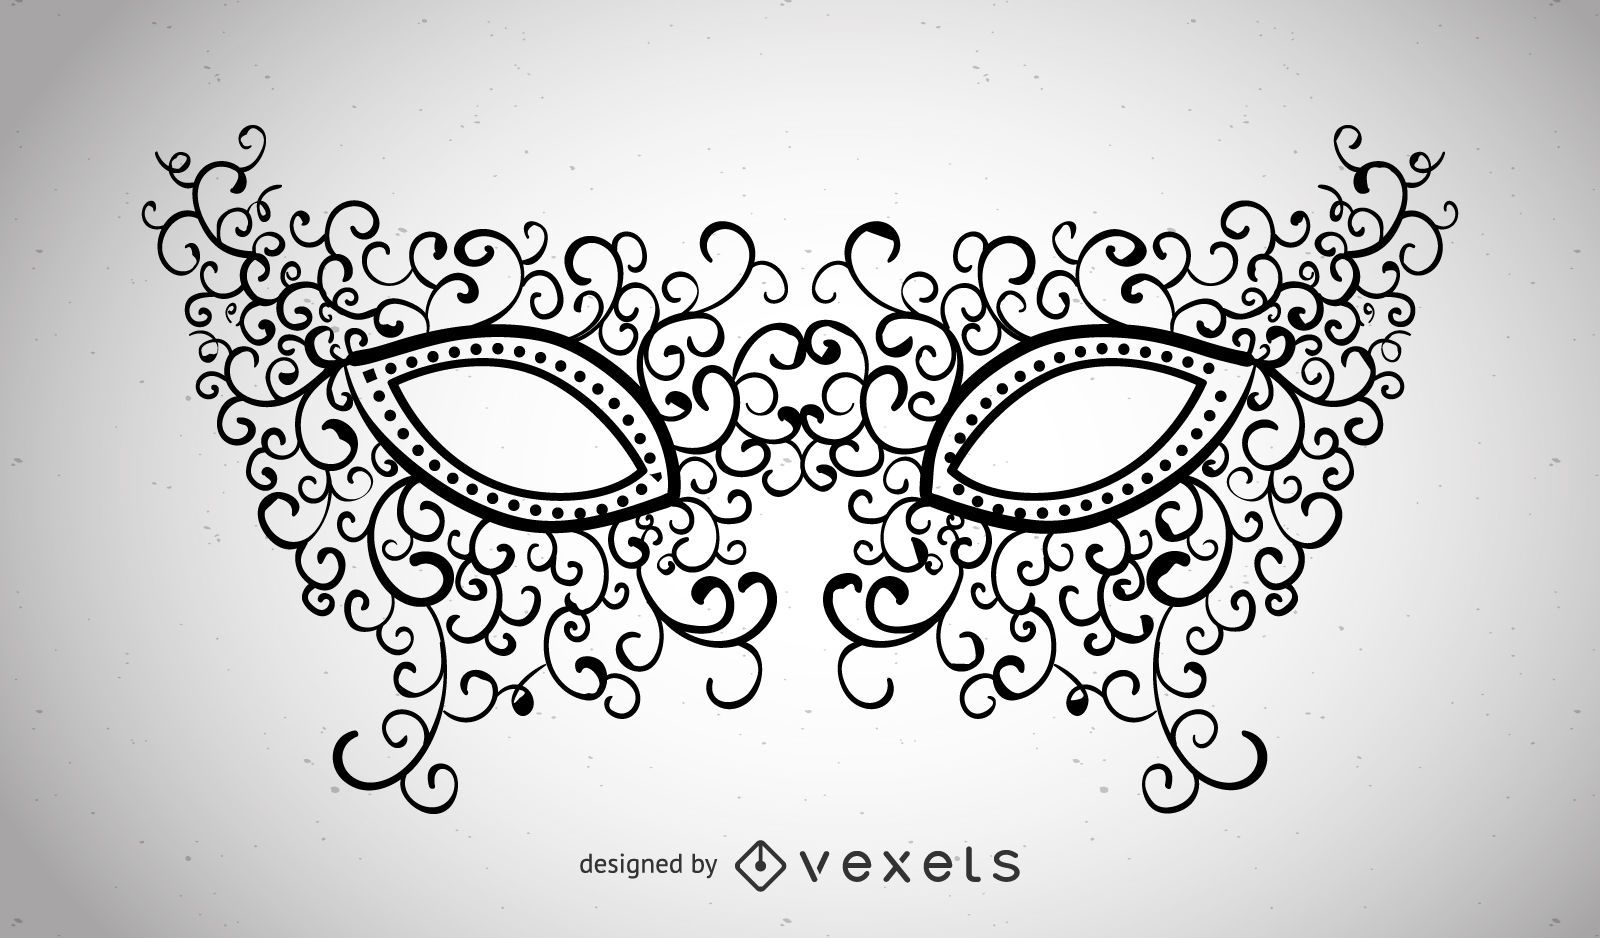 Máscara de carnaval ilustrada com redemoinhos